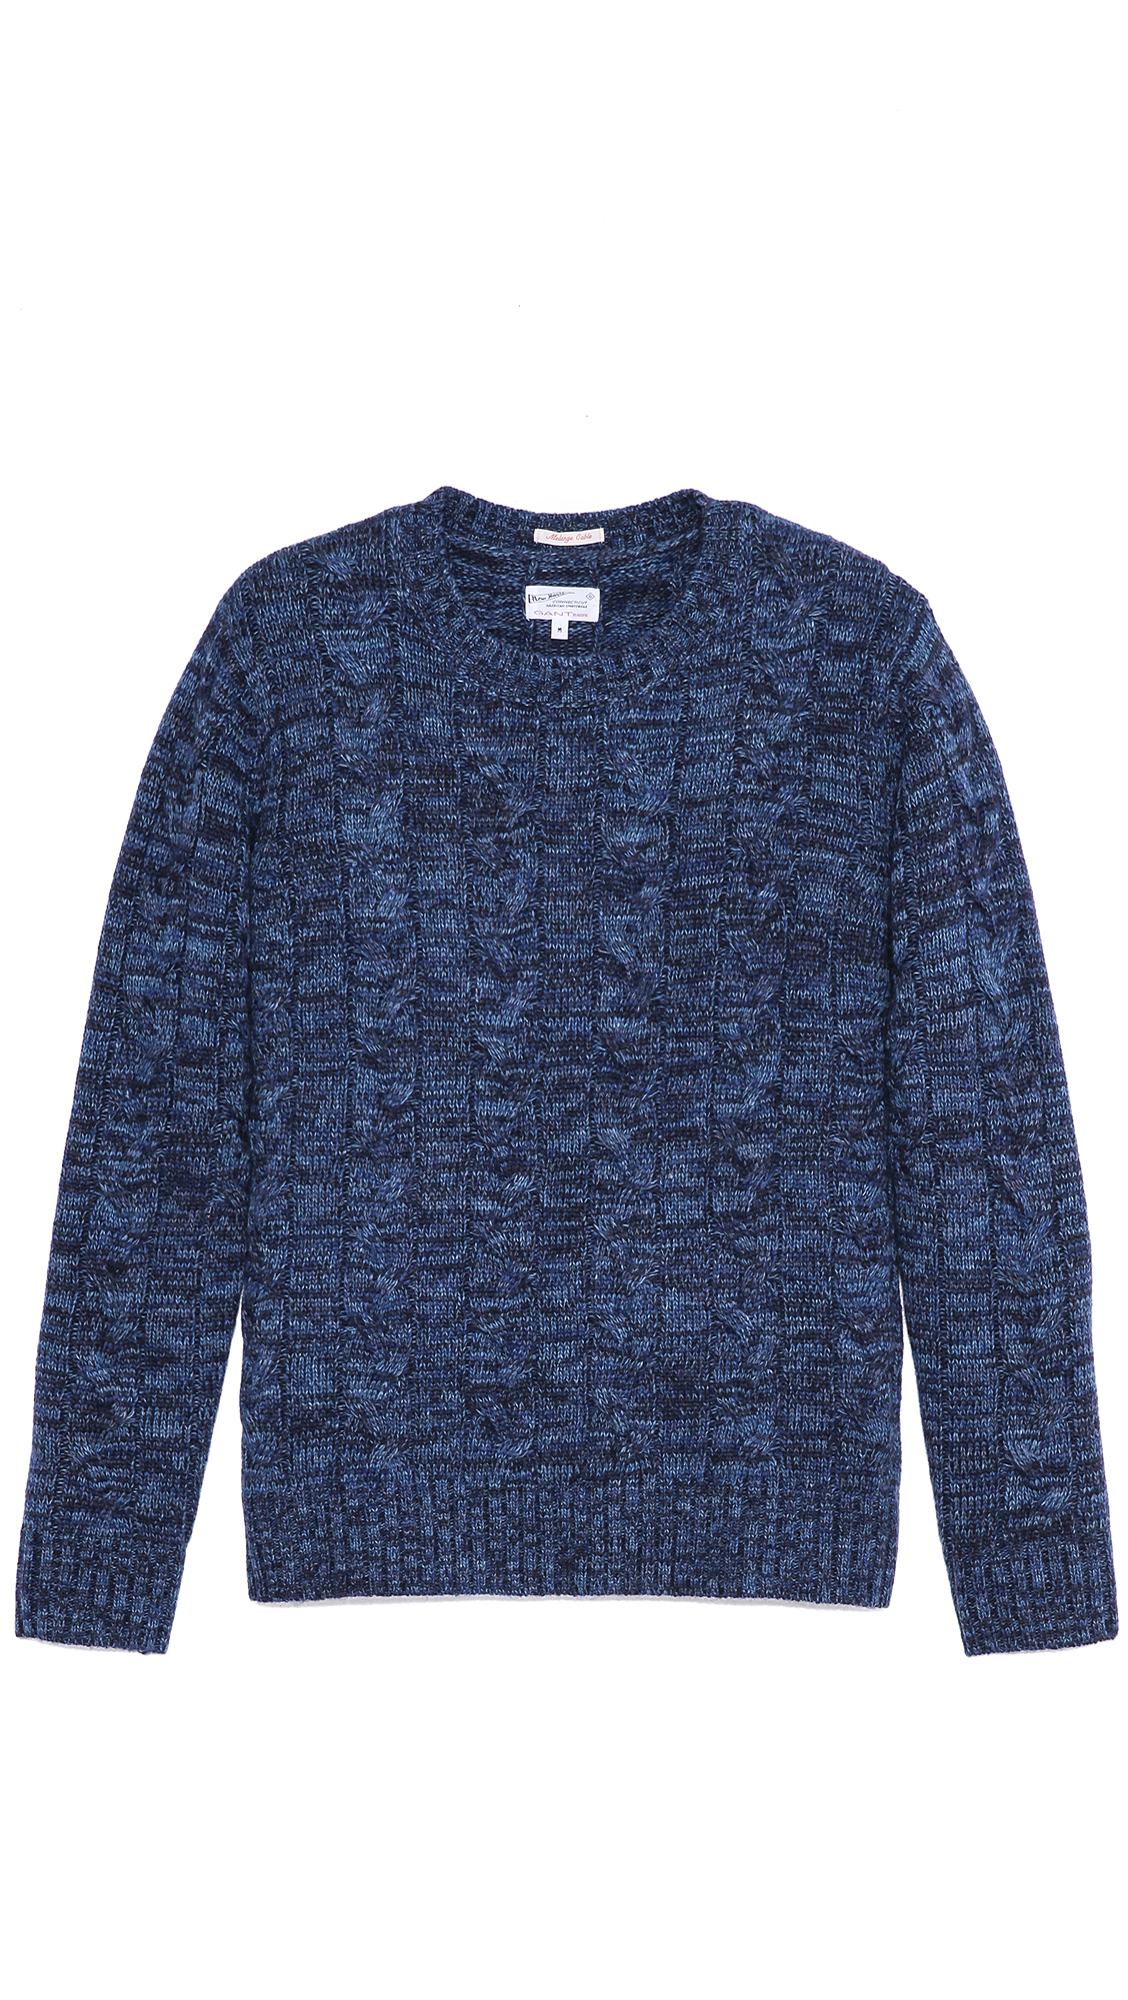 Lyst - Gant rugger Melange Cable Knit Sweater in Blue for Men